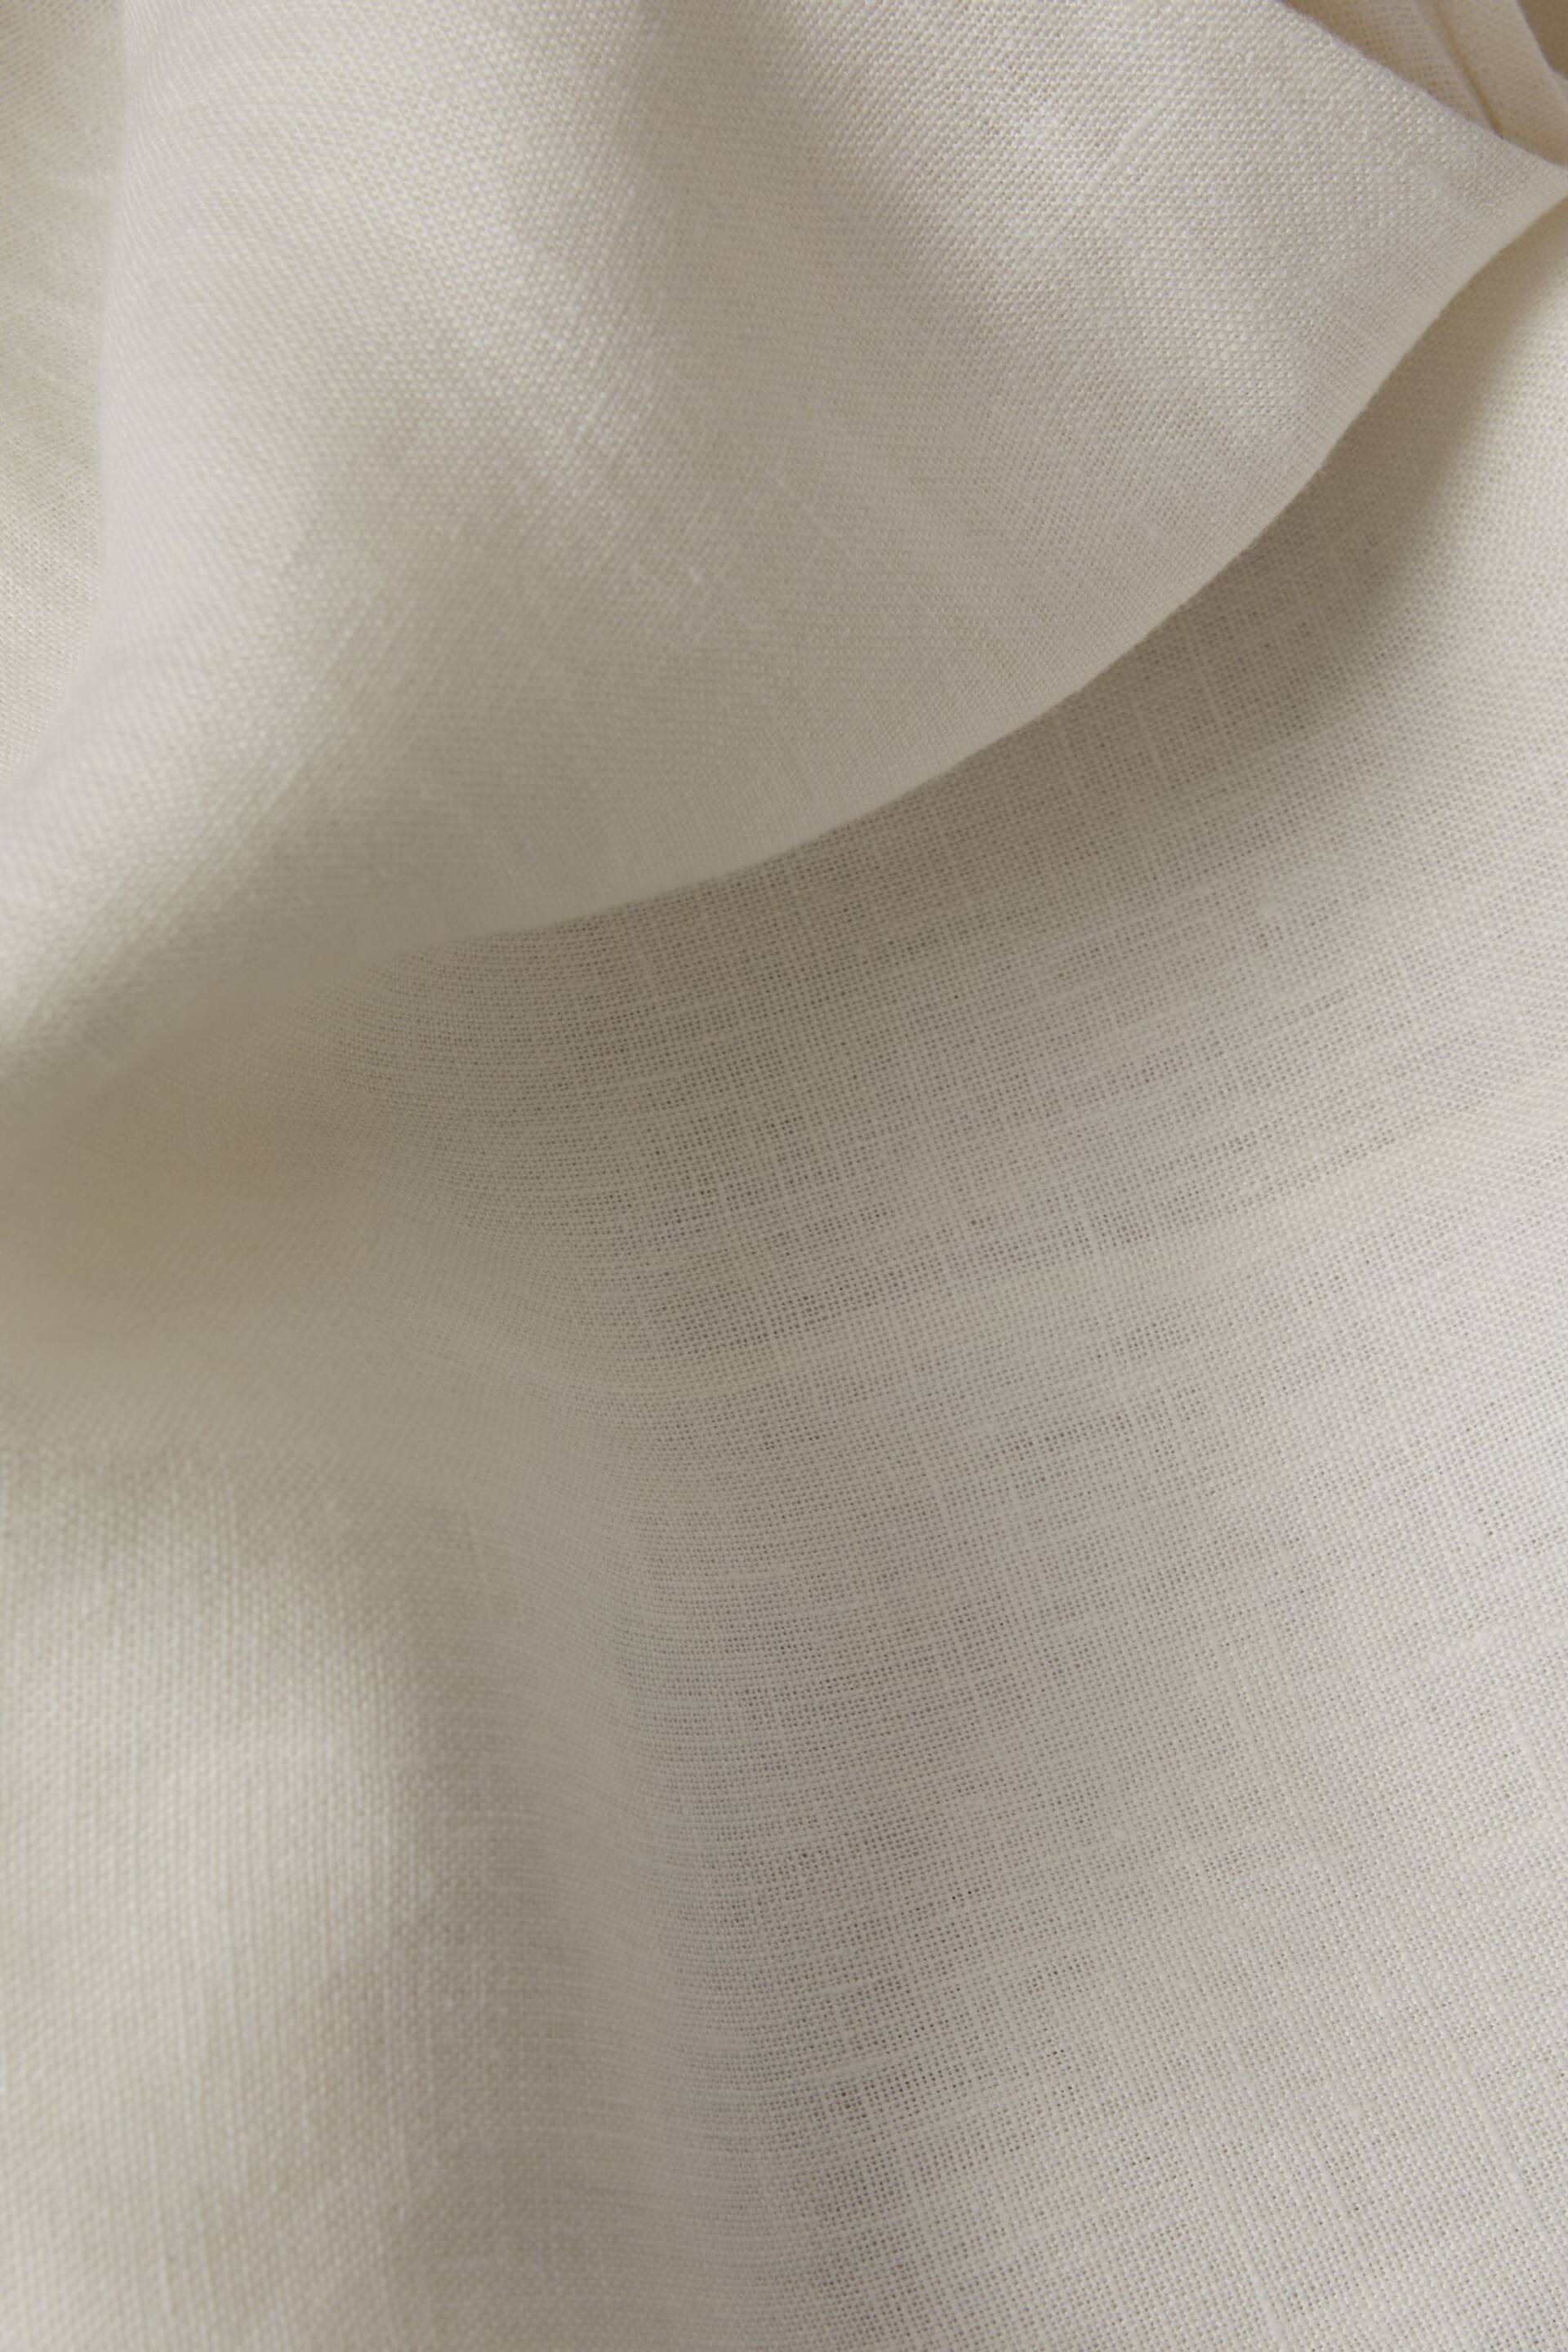 Reiss White Abigail High Rise Linen Maxi Skirt - Image 6 of 6